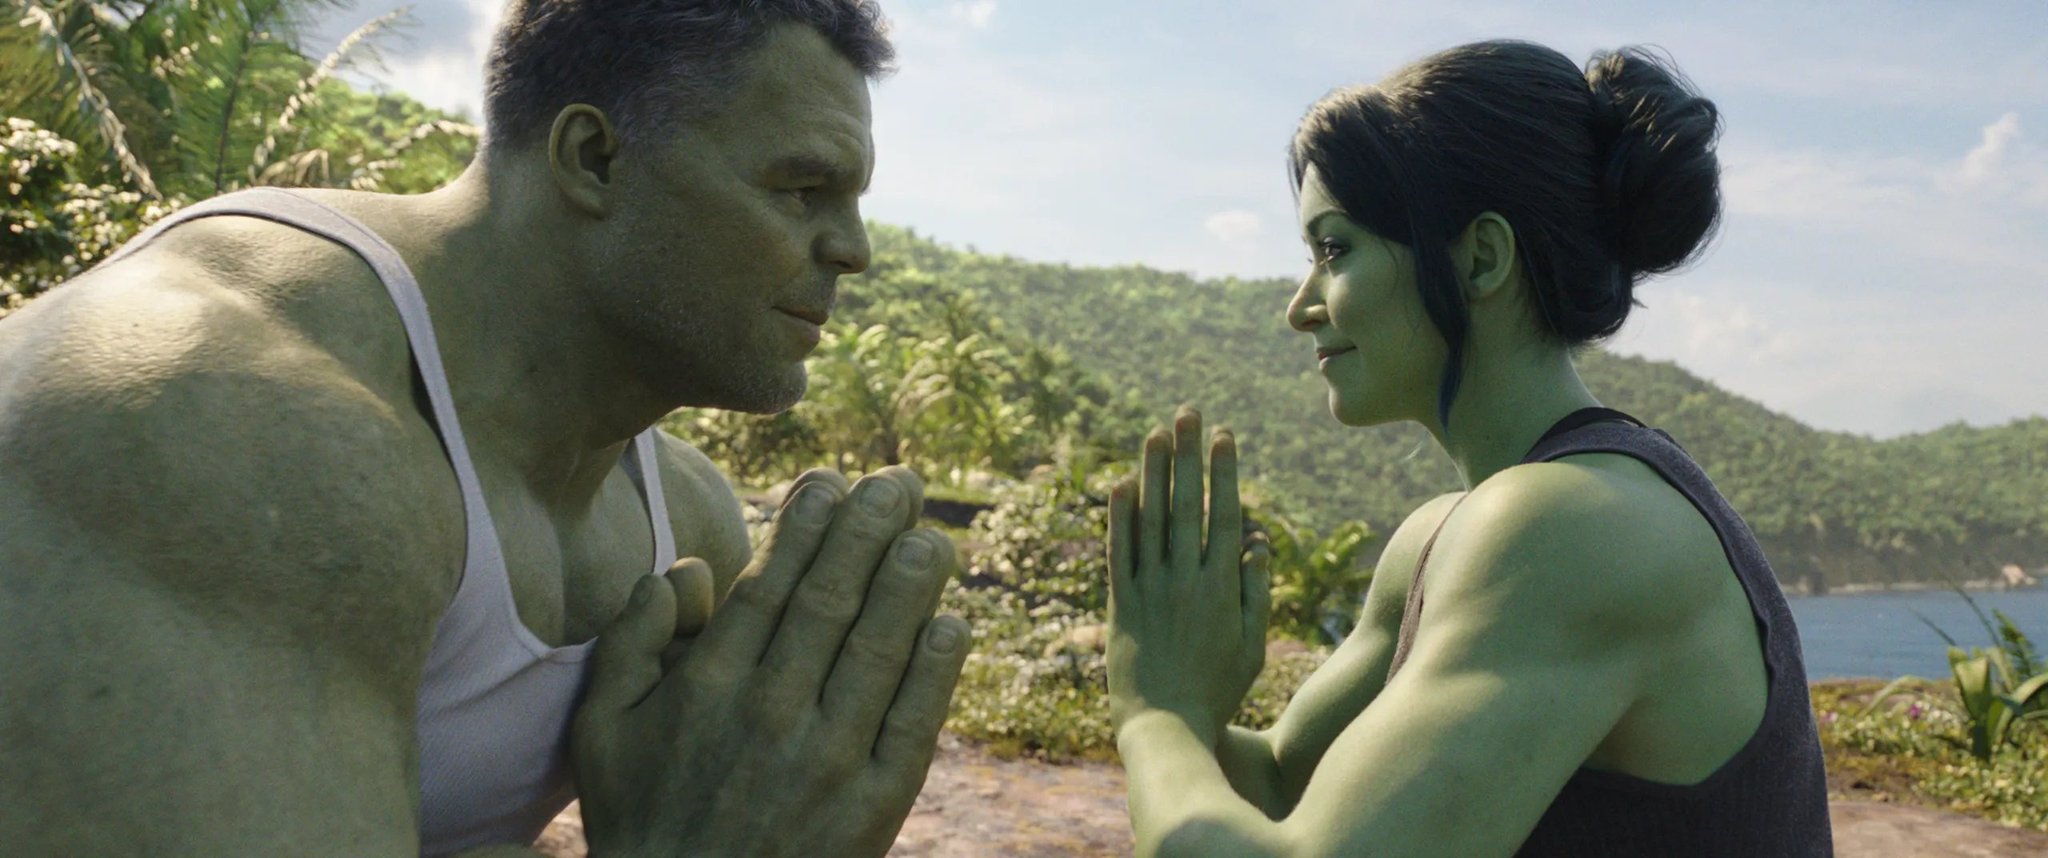 Atores de Mulher-Hulk fazem audições para interpretar Homem-Sapo na série